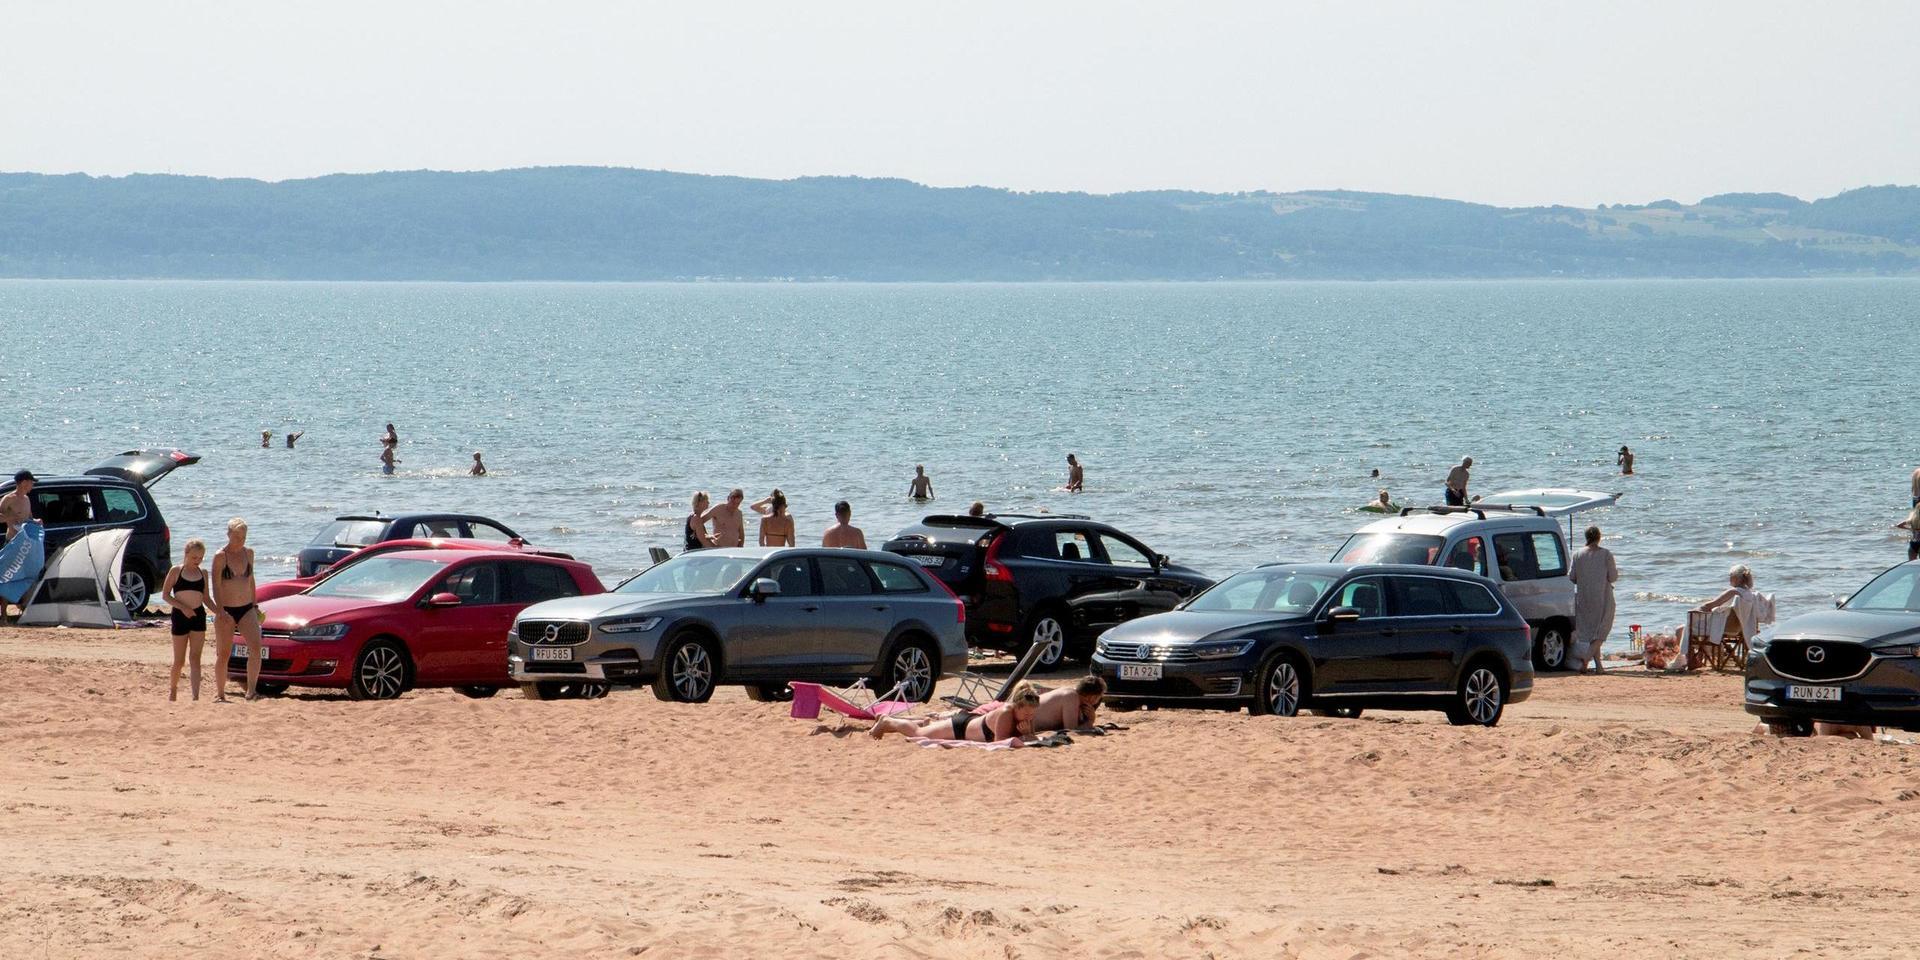 Strandmiljö Laholm har som förening ingen rätt att klaga i ett tillsynsärende om bilstranden, fastslår länsstyrelsen i ett beslut.